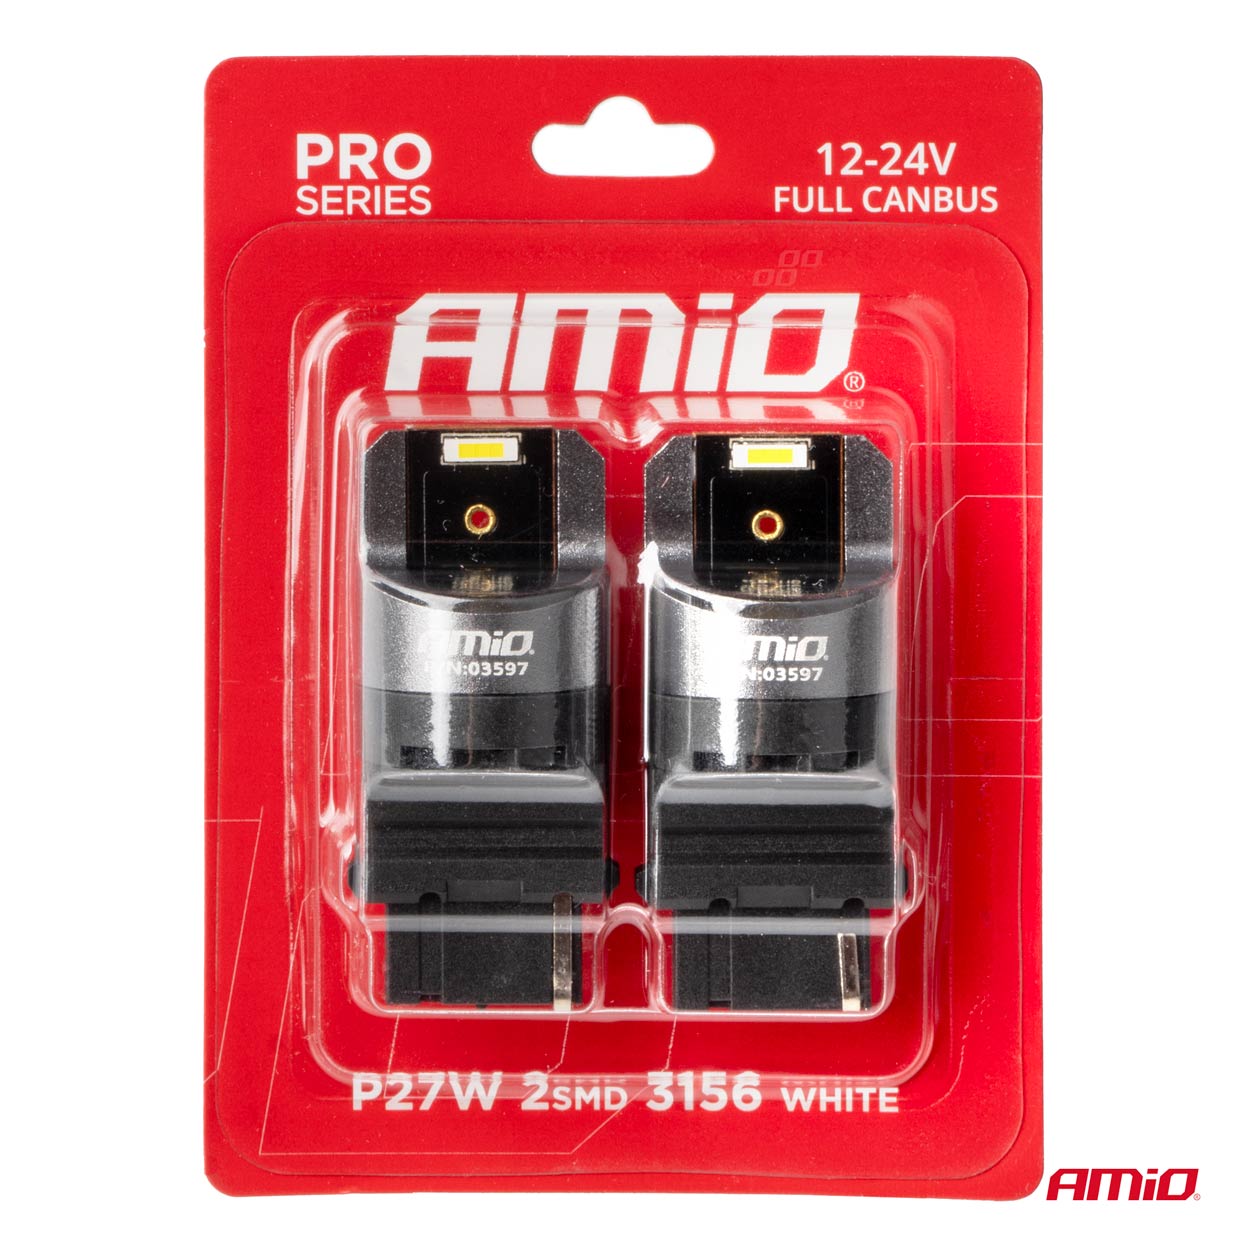 AMIO LED CANBUS PRO series 3156 P27W 2x1860SMD White 12 24V FULL CANBUS AMIO-035972.jpeg